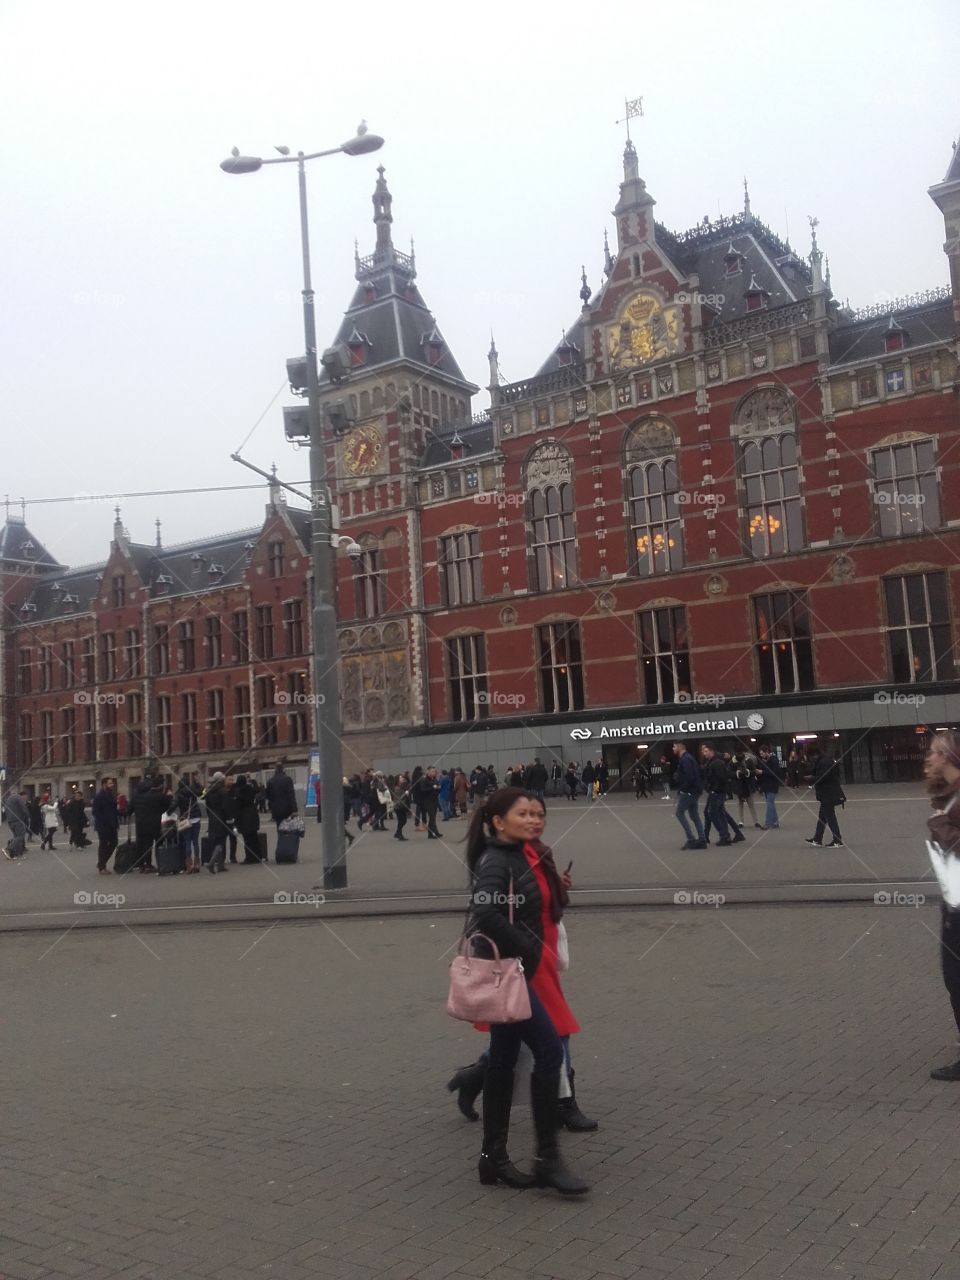 Rush hour's in Amsterdam